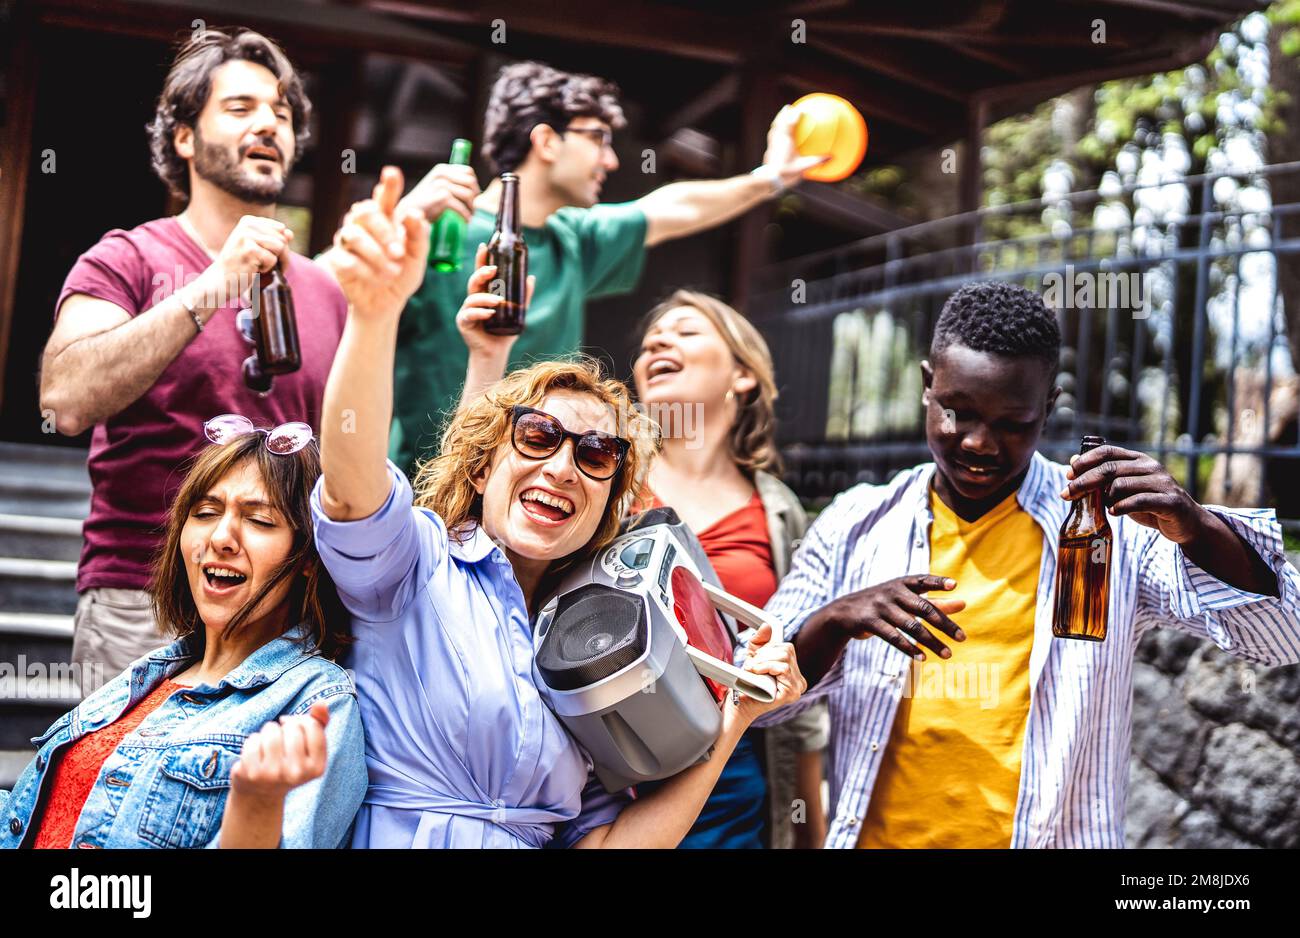 Multikulturelle Personengruppe, die Spaß im Freien hat und mit Boombox und Bierflasche jubelt - gemischte Altersfreunde genießen gemeinsam das Spring Break Party Festival Stockfoto